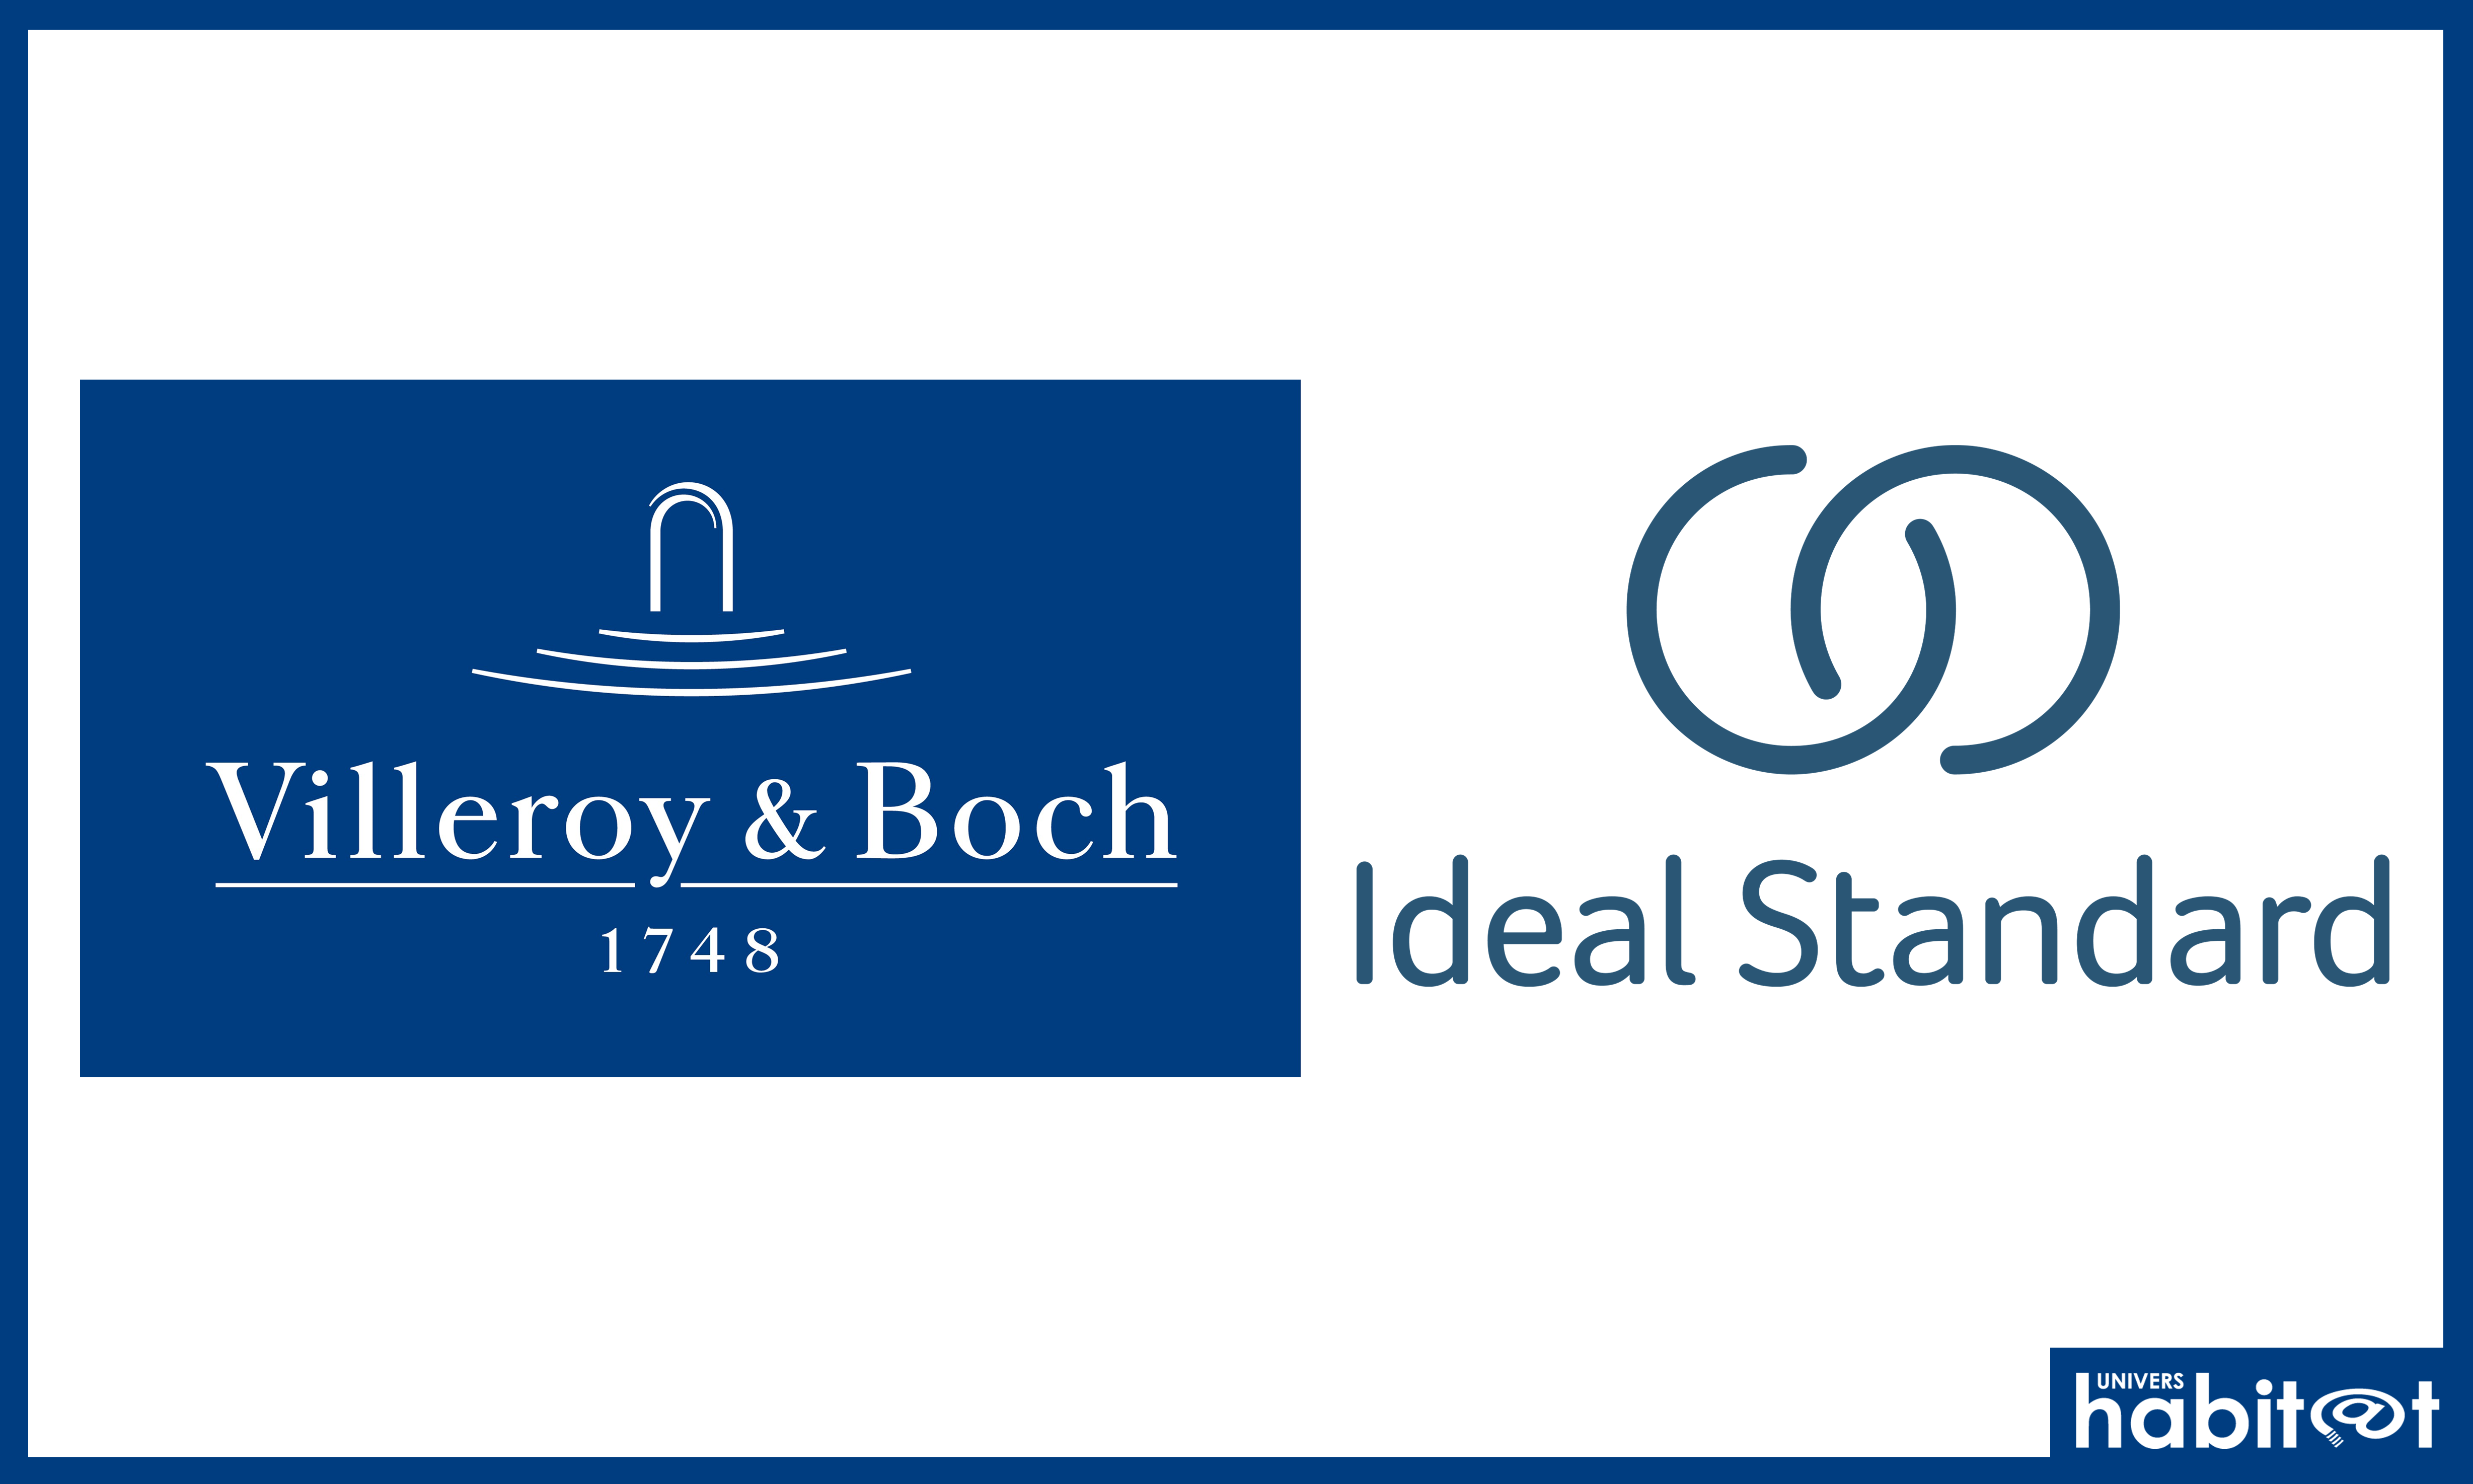 Villeroy & Boch rachète Ideal Standard et devient l’un des plus grands fabricants de produits pour la salle de bains en Europe